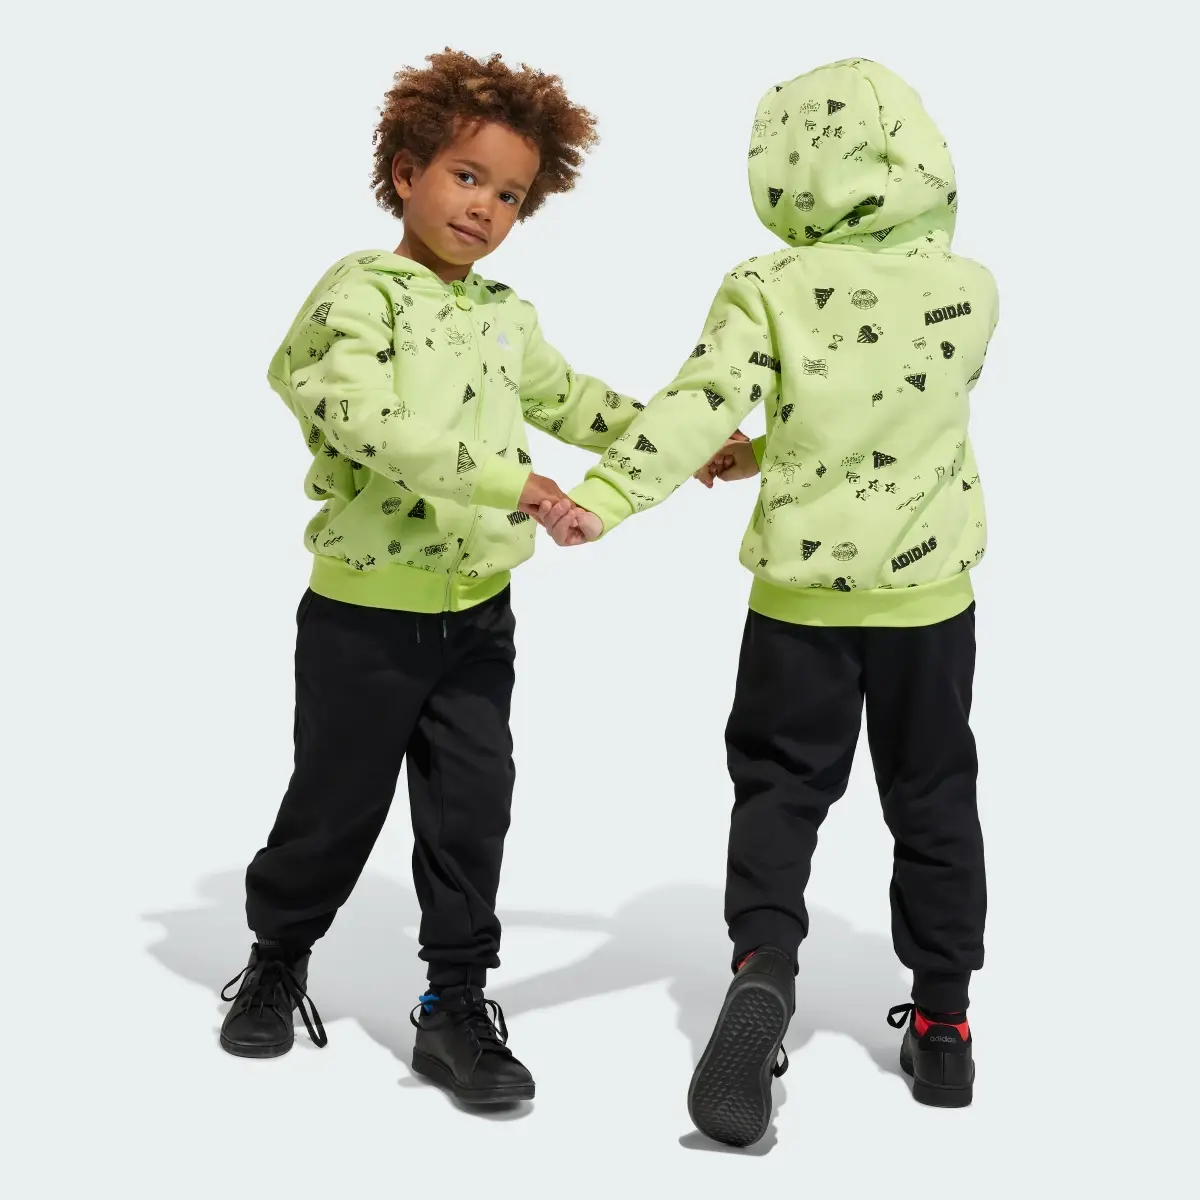 Adidas Tuta Brand Love Hooded Kids. 1